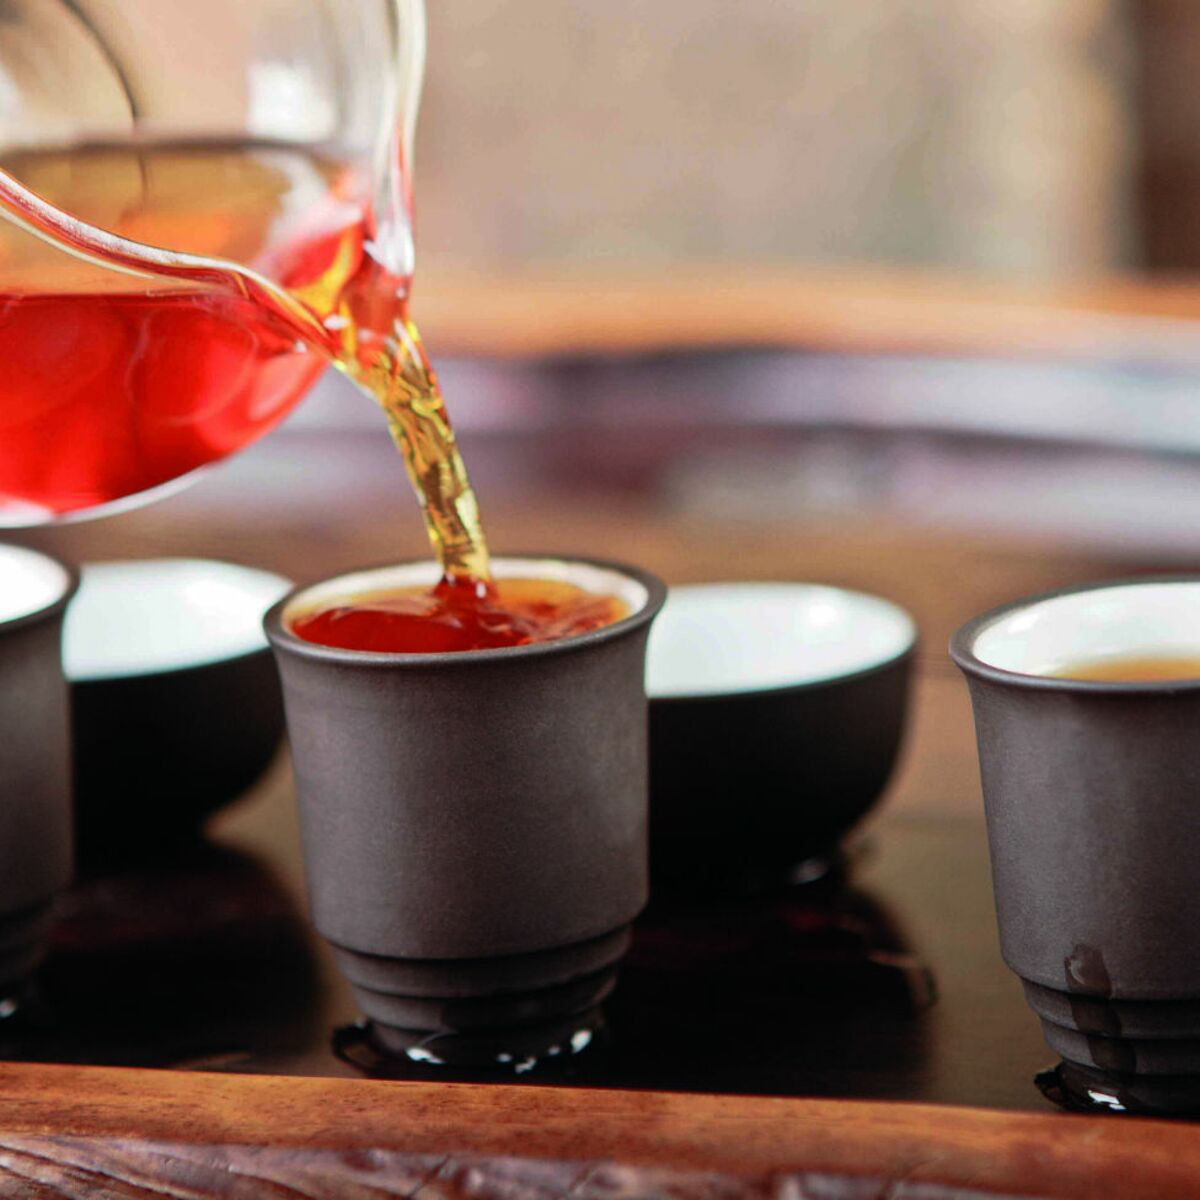 Le rooibos, un thé rouge ? Guide du Thé - Les Thés de la Pagode